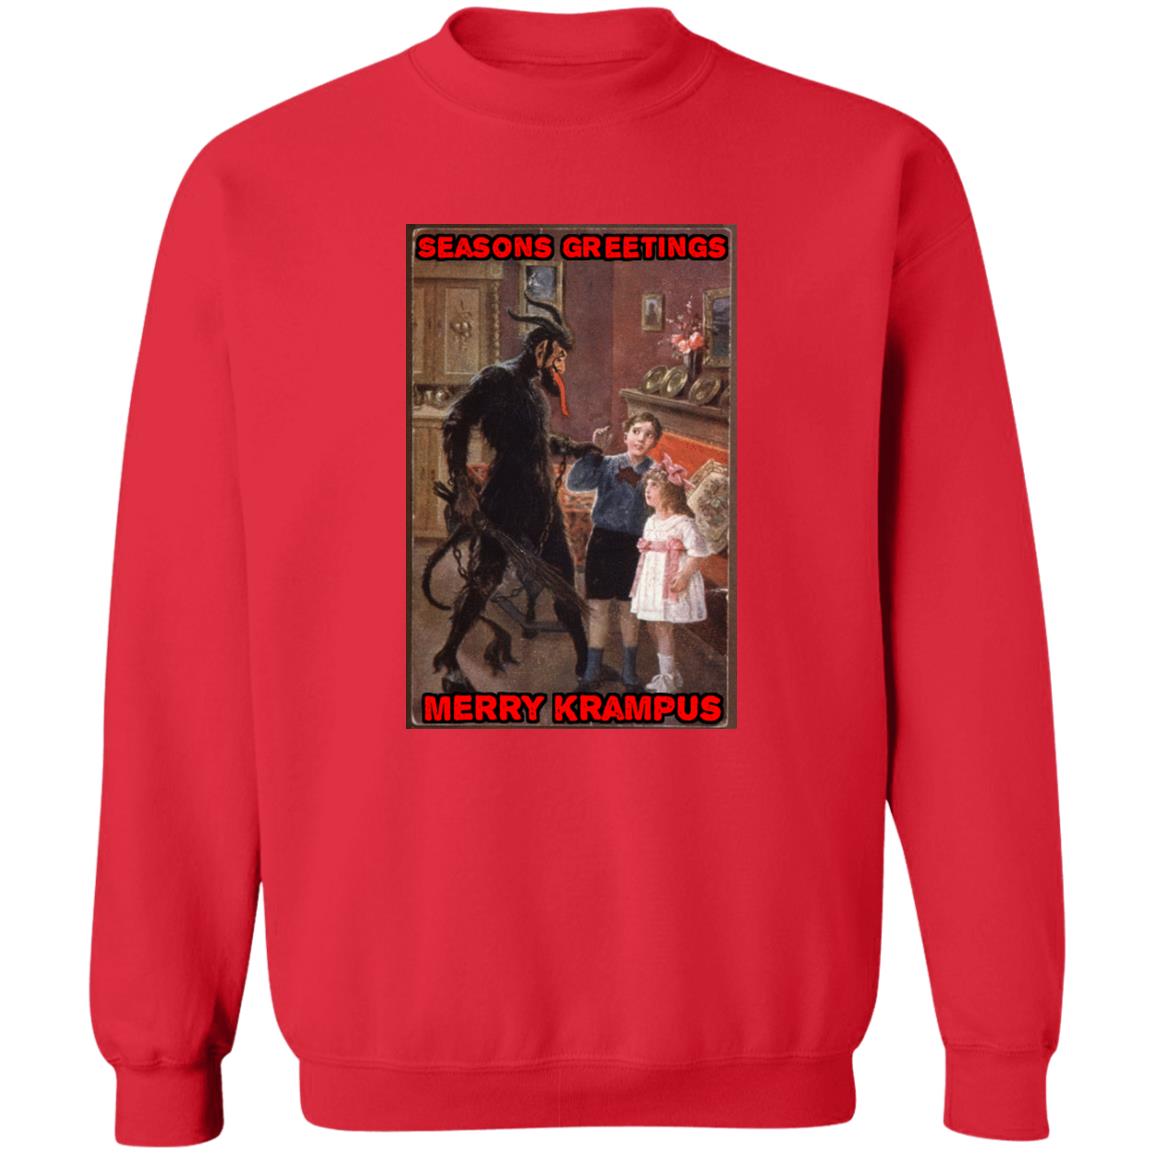 Merry Krampus Sweatshirt,  Horror Fan Christmas shirt, Horror Sweatshirts, Krampus shirt, Evil Christmas Sweatshirt